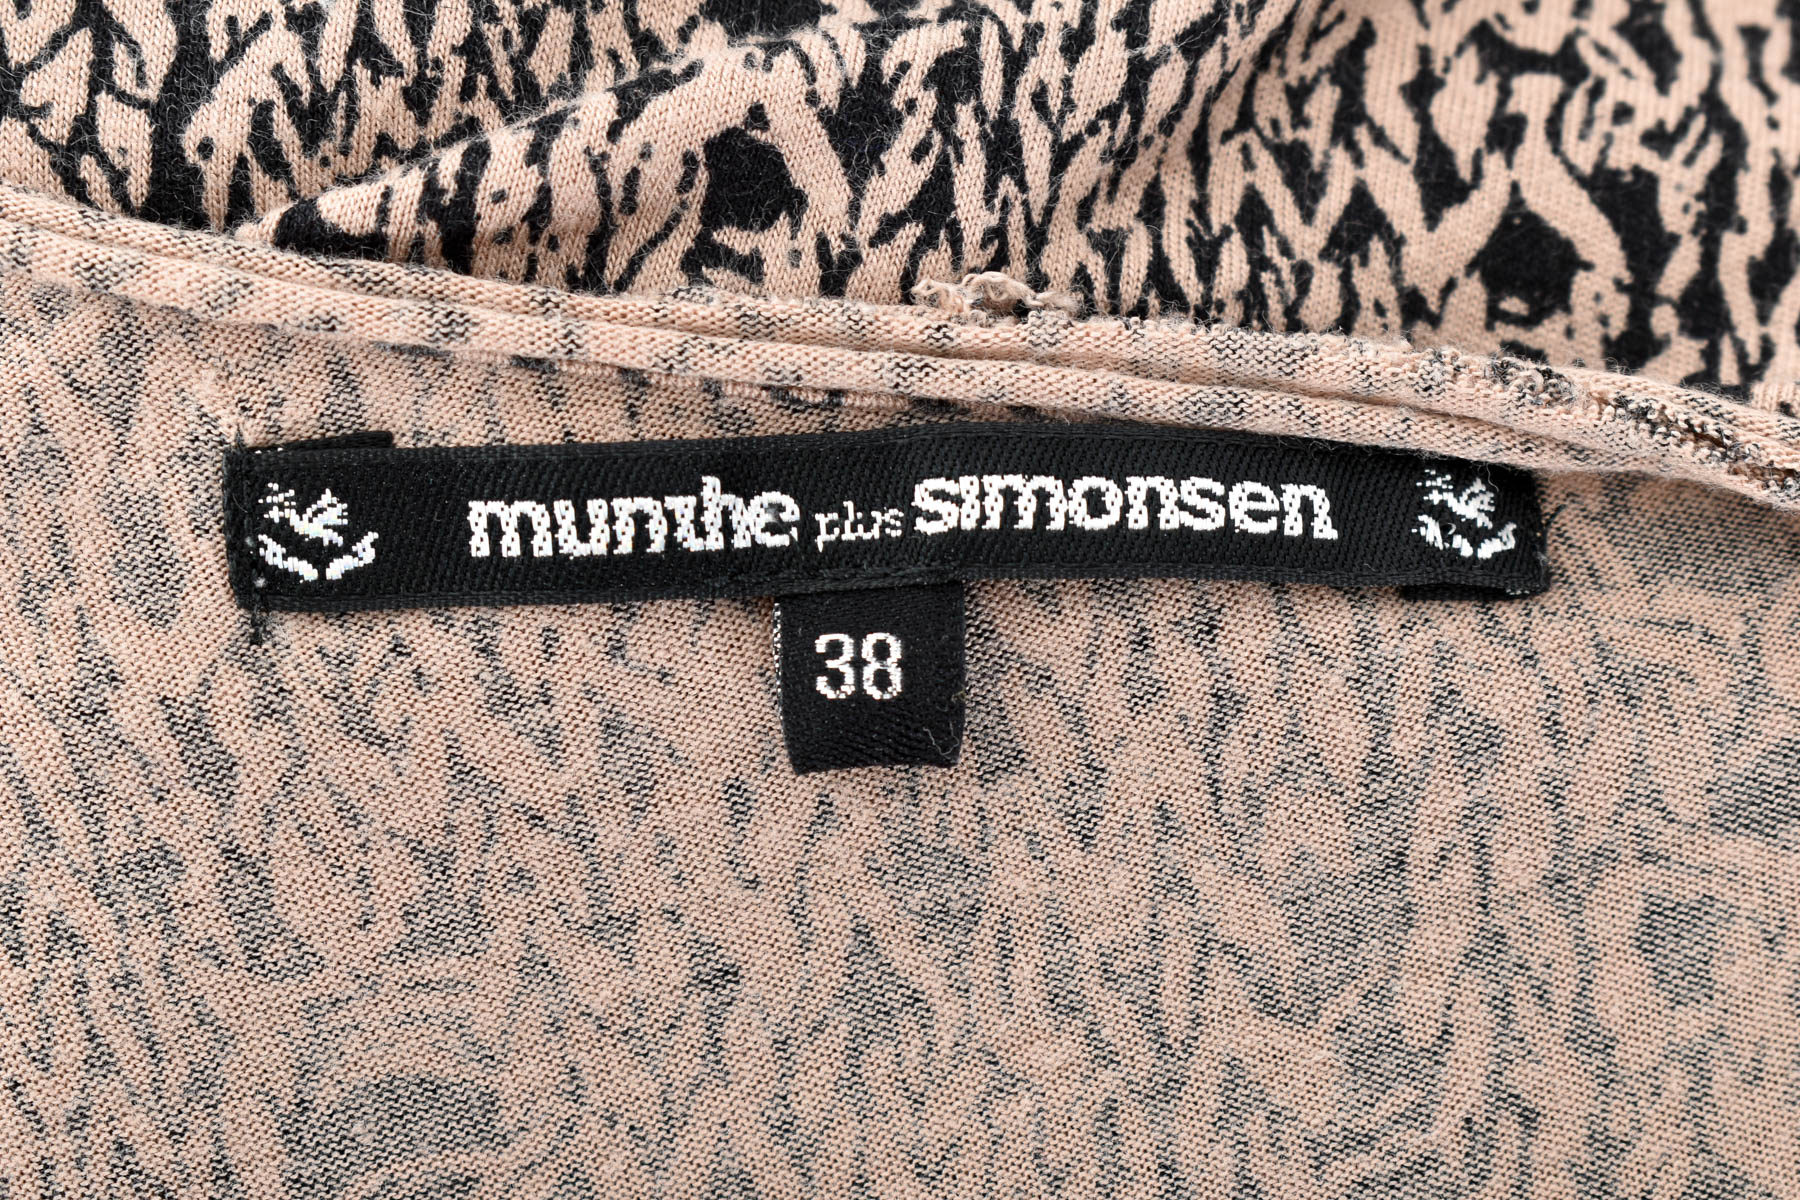 Damski podkoszulek - Munthe plus Simonsen - 2